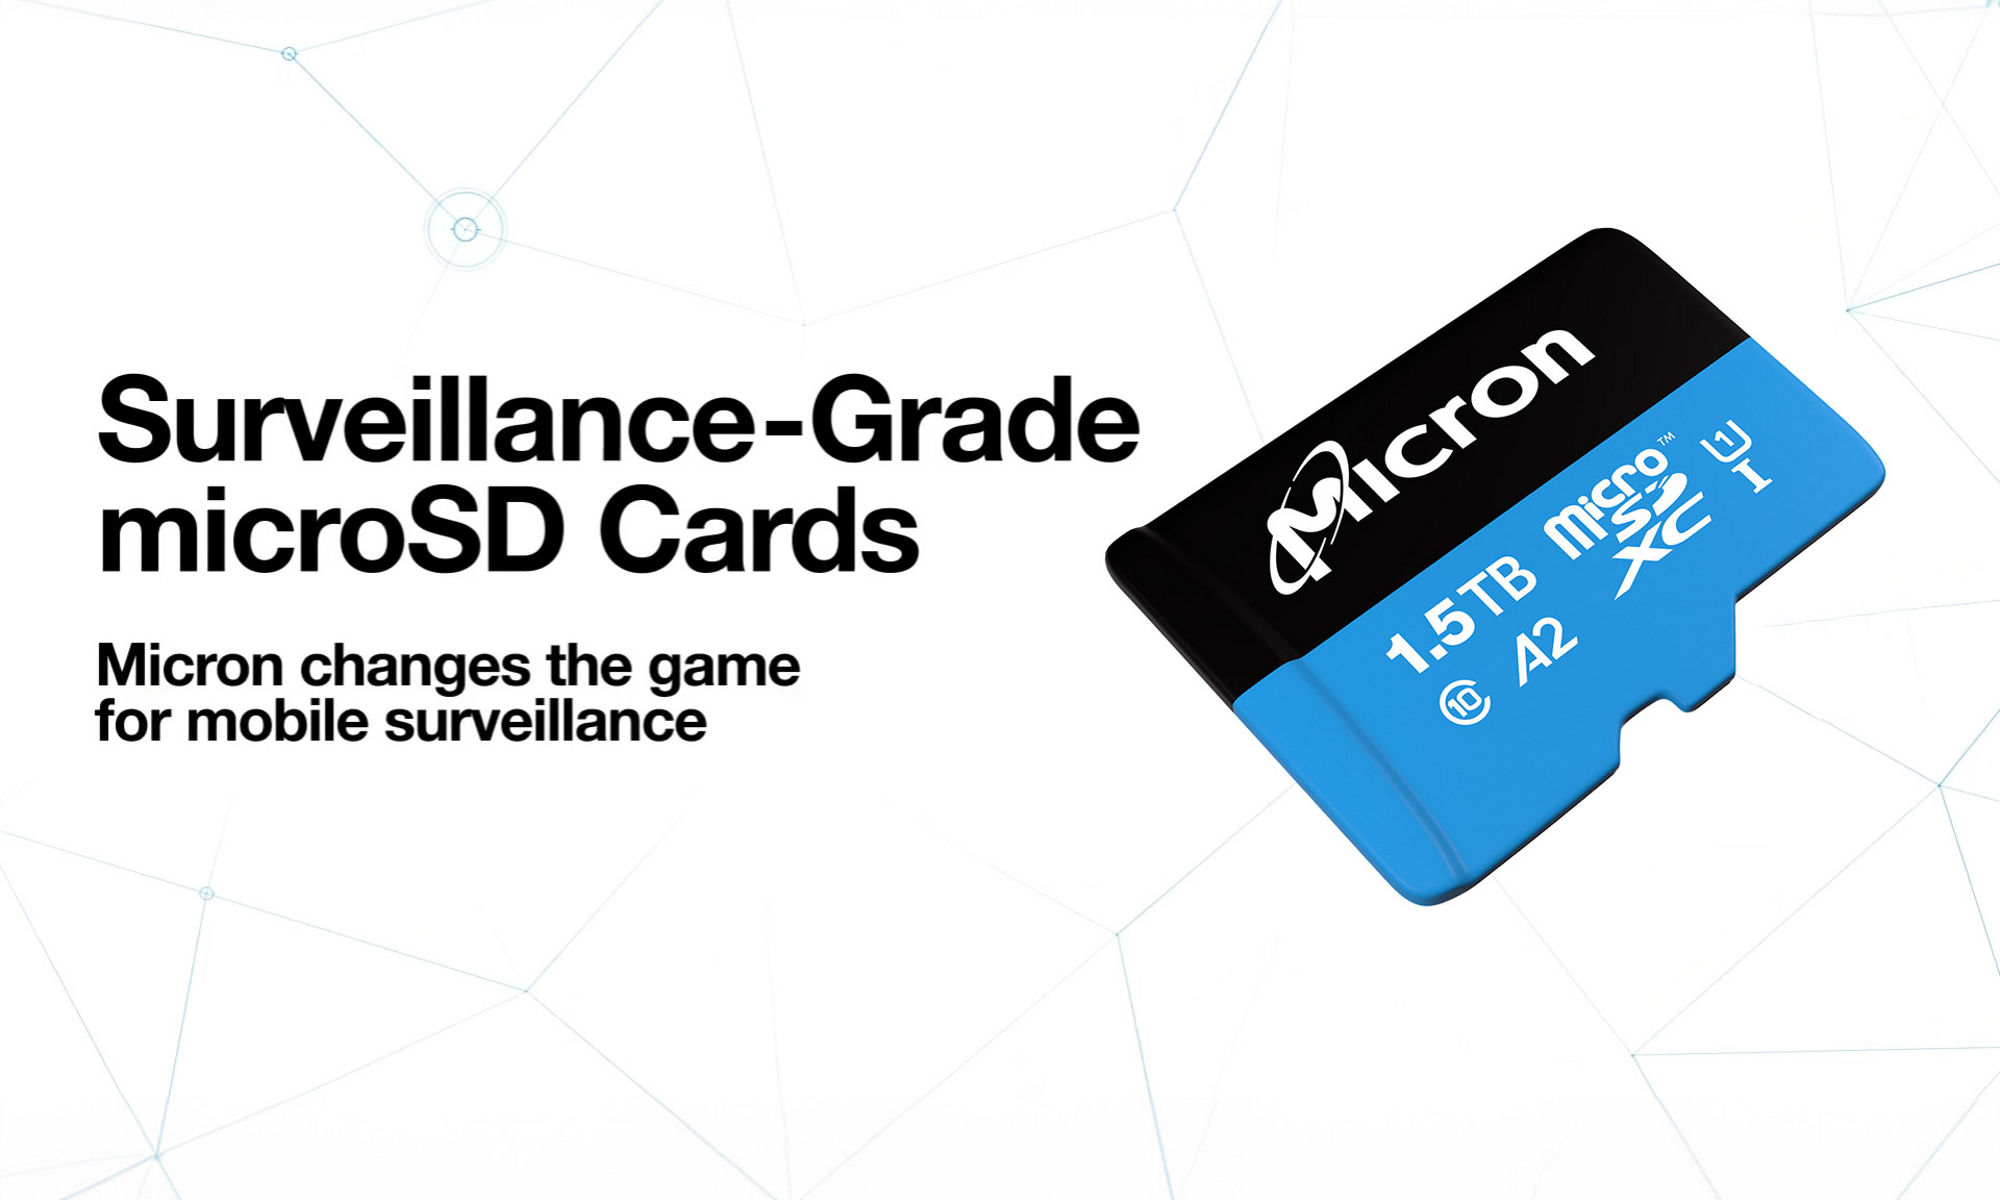 A 1.5TB Micron microSD card 